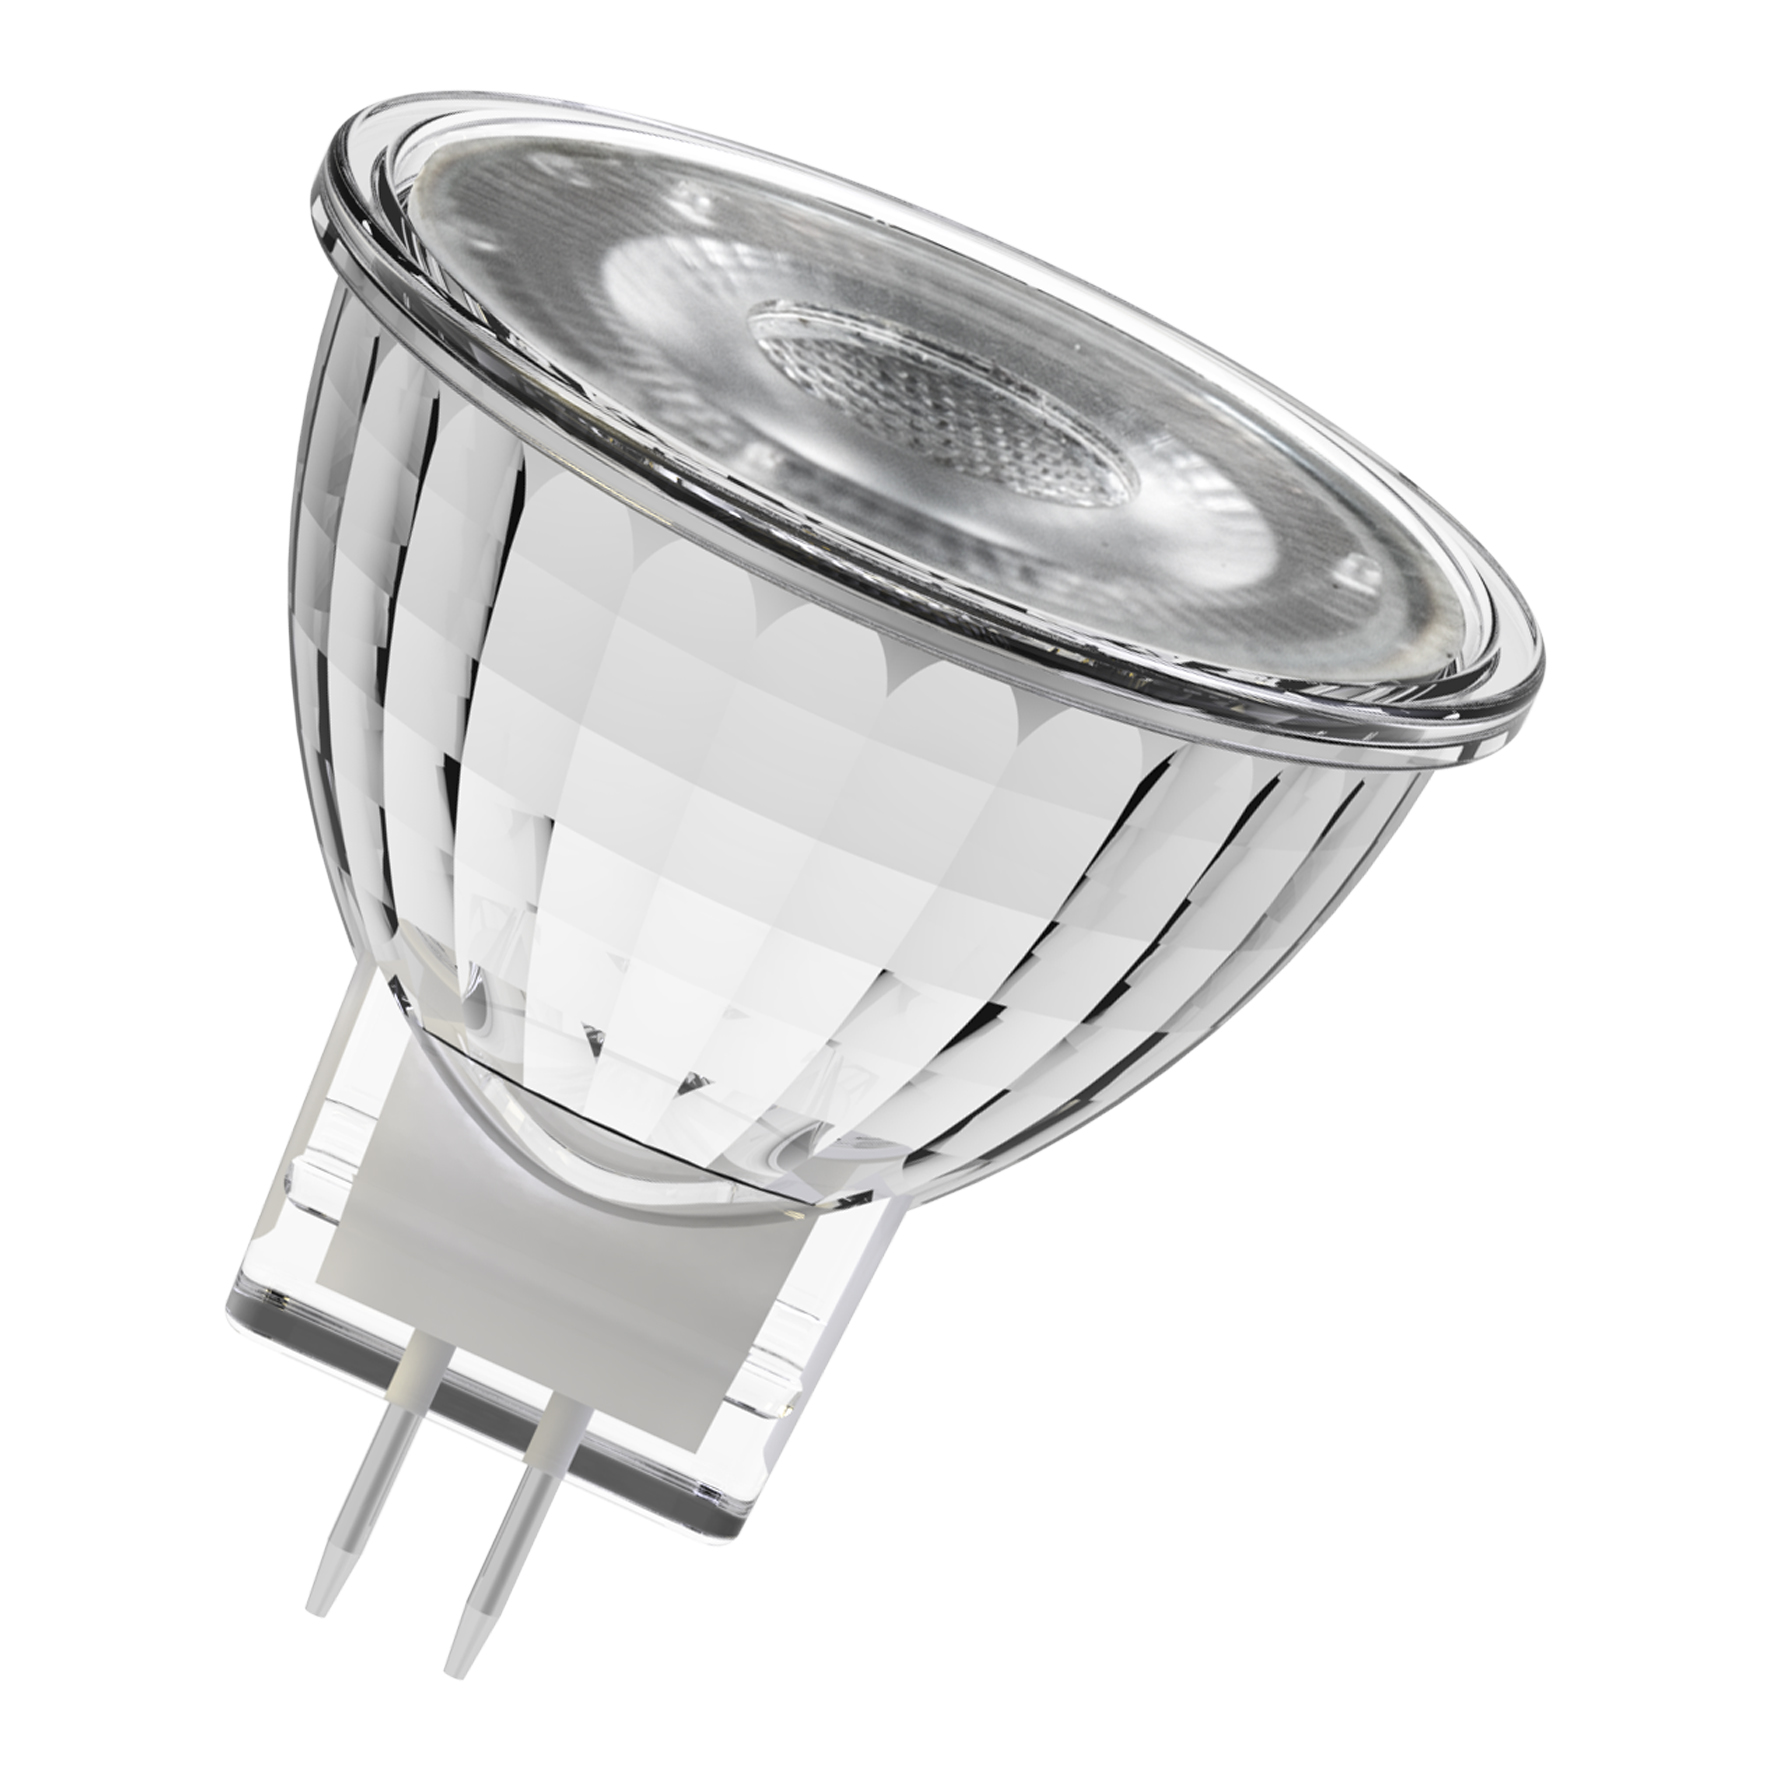 Verder Inheems Scheermes 145369 - MR11 GU4 - Laagvolt - LED Spot - LED Lampen - Producten | Bailey